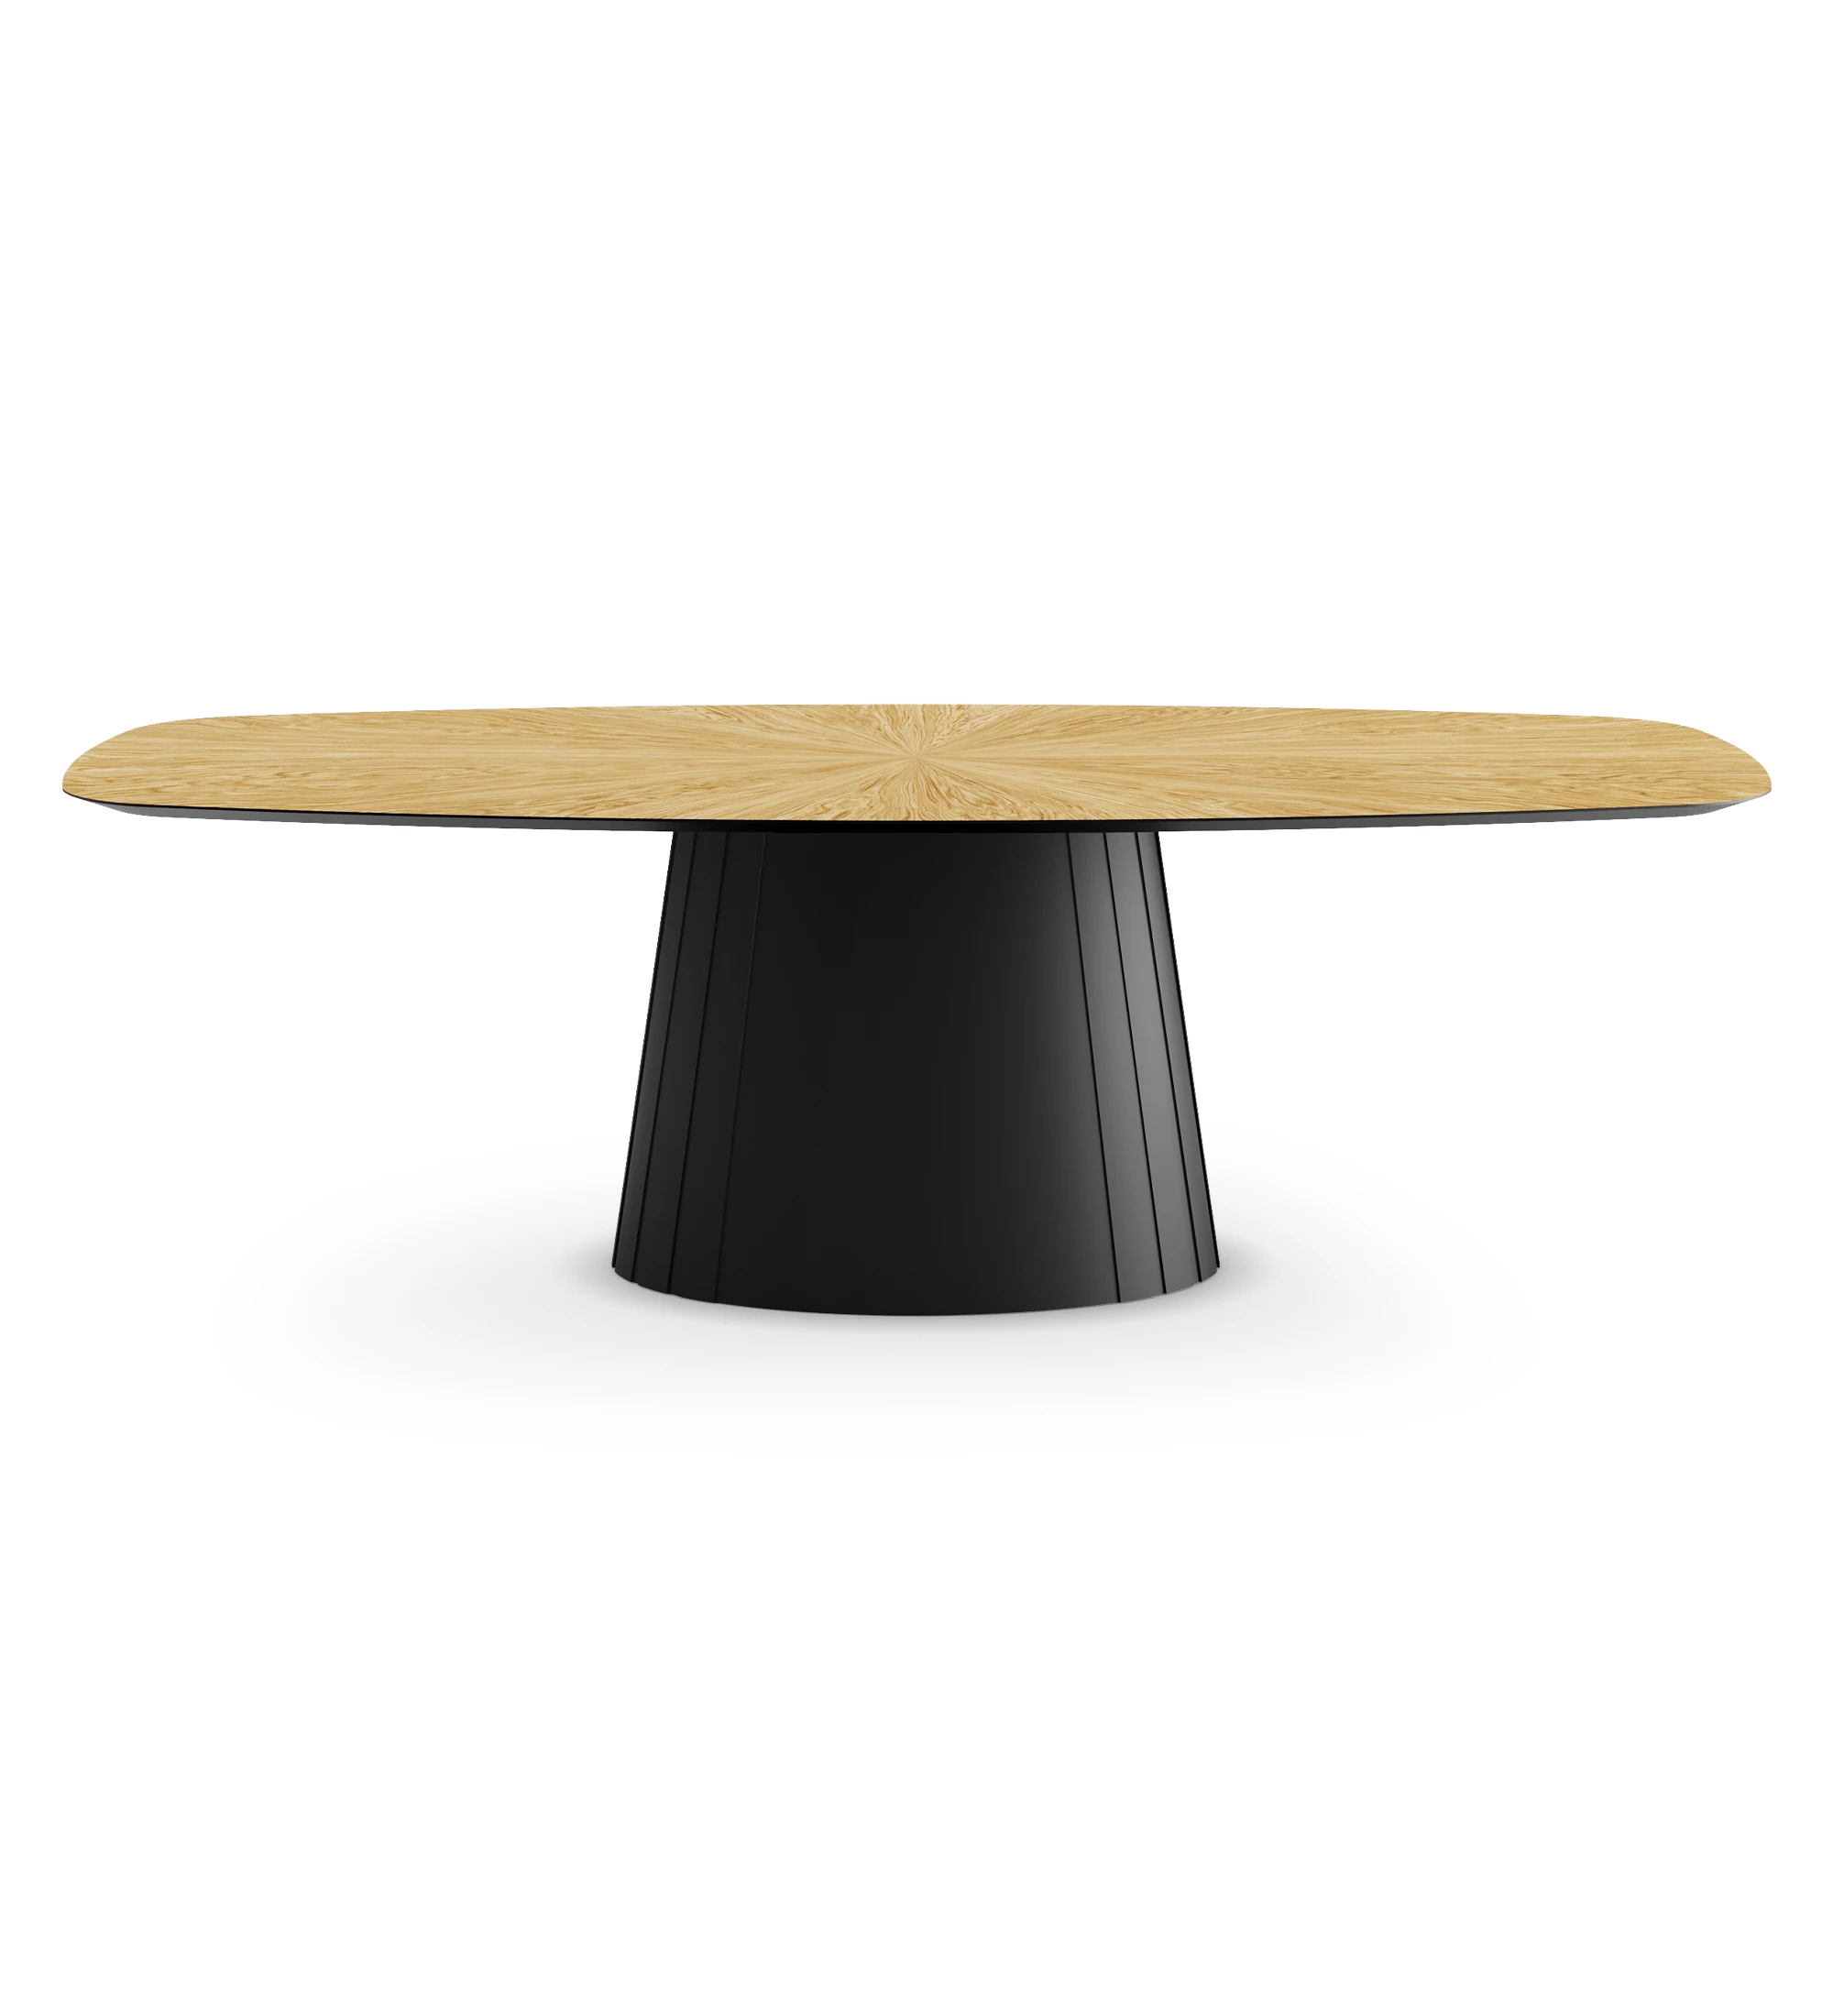 Table de repas ovale Cannes 250 x 110 cm, plateau en chêne naturel, pied laqué noir.